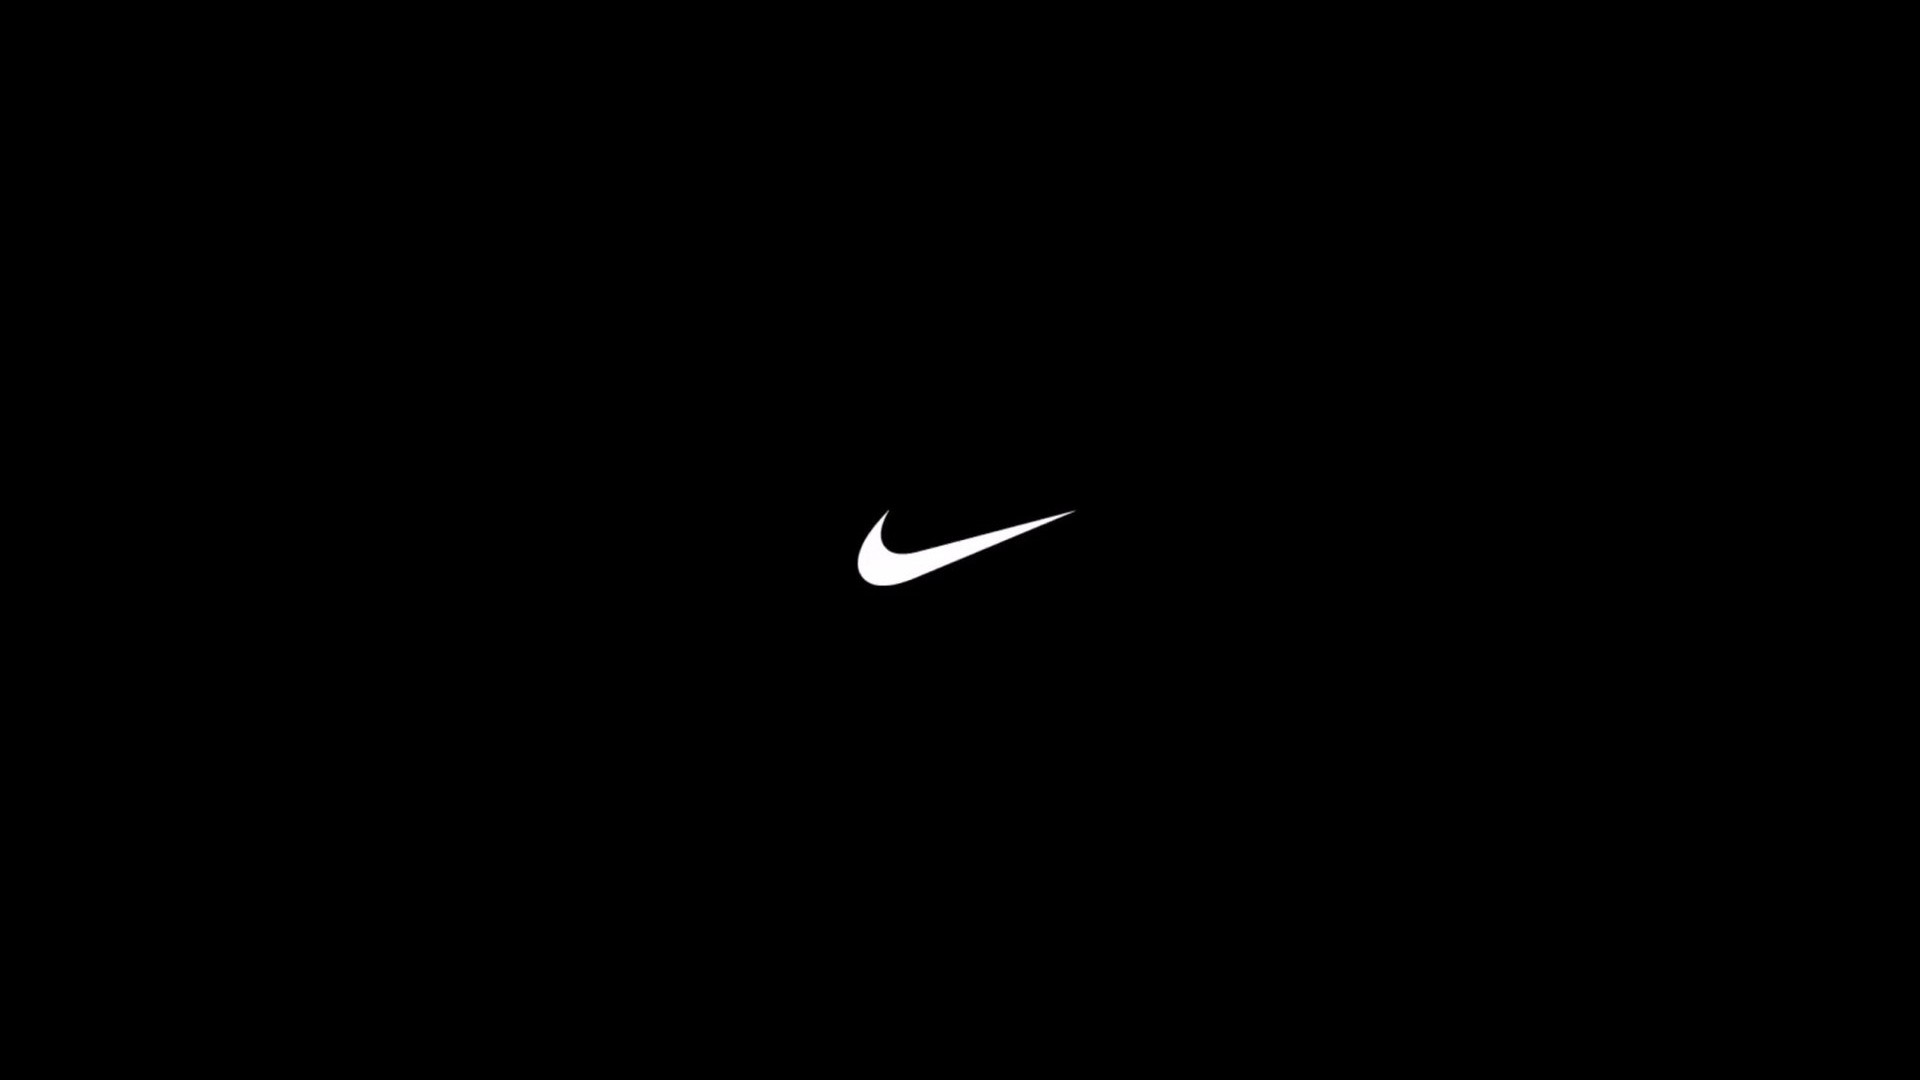 1920x1080 Nike logo wallpaper